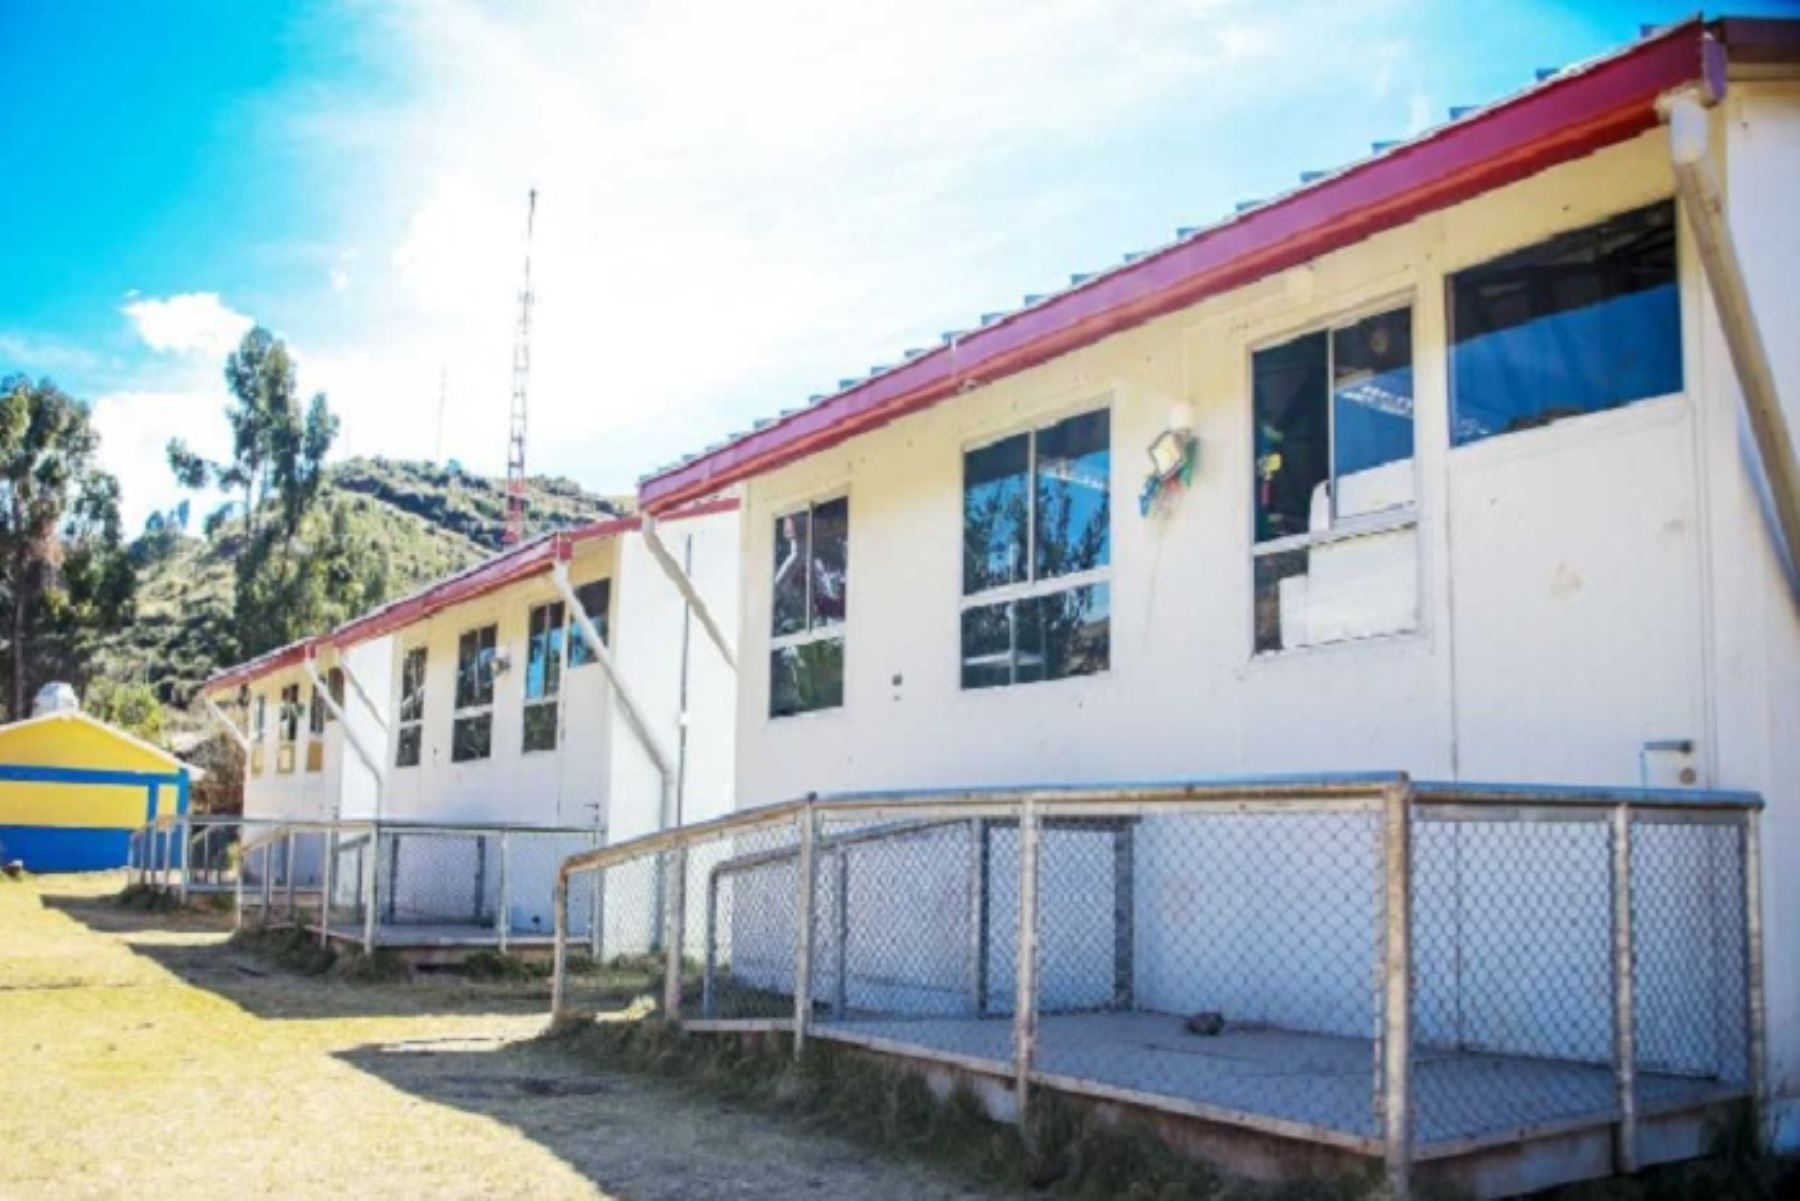 Cerca de 500 escolares de colegios rurales de la región Tumbes estudiarán en óptimas condiciones el próximo año 2019, gracias a las modernas unidades educativas que adquirirá e instalará el Ministerio de Educación en cada uno de los centros educativos afectados por el Fenómeno de El Niño Costero 2017.